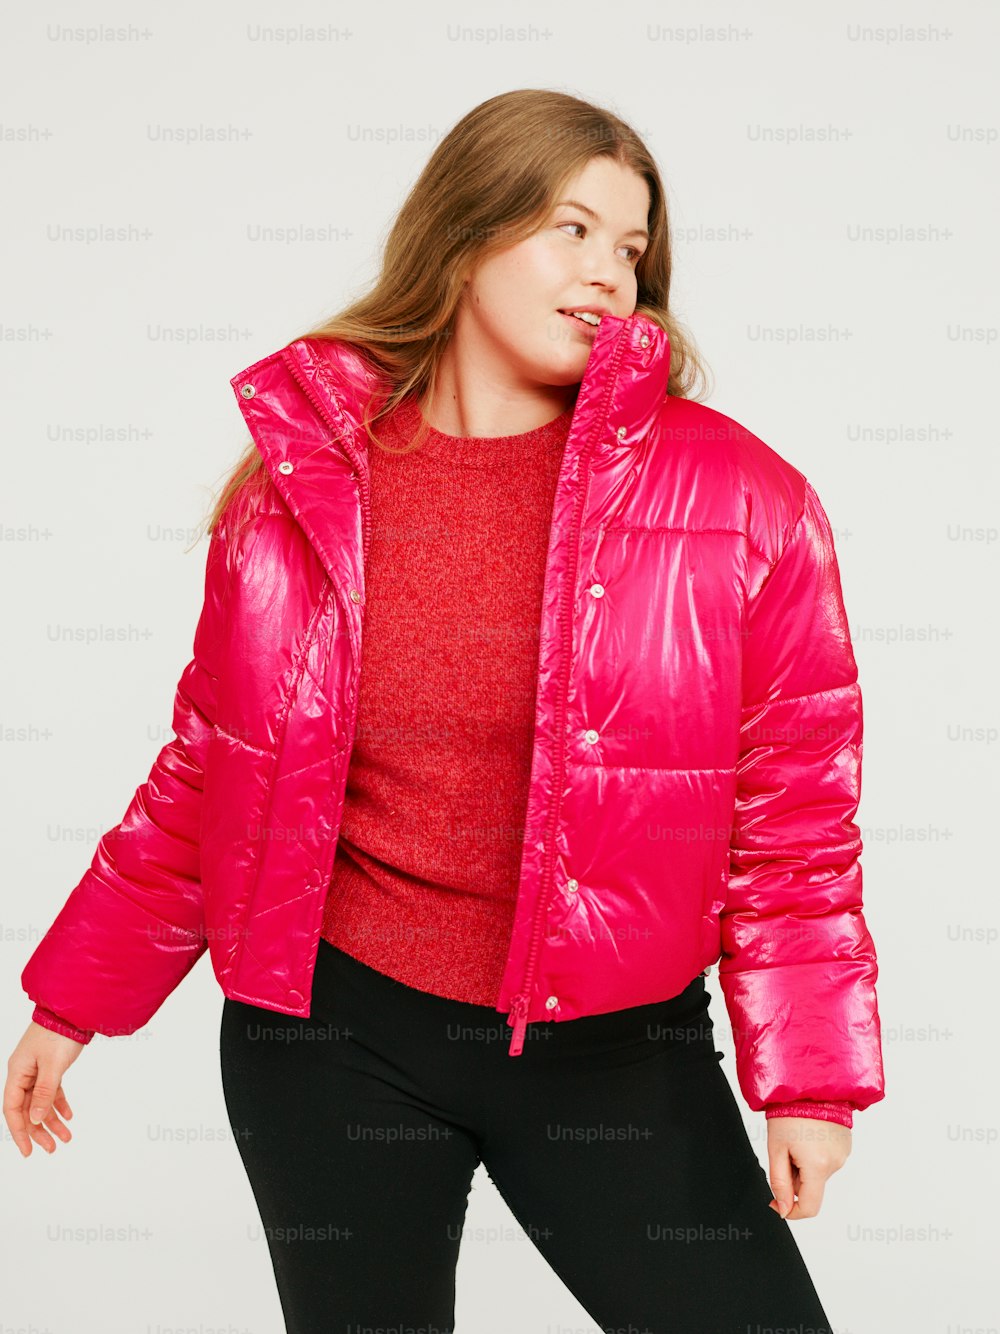 밝은 분홍색 재킷과 검은색 바지를 입은 여성